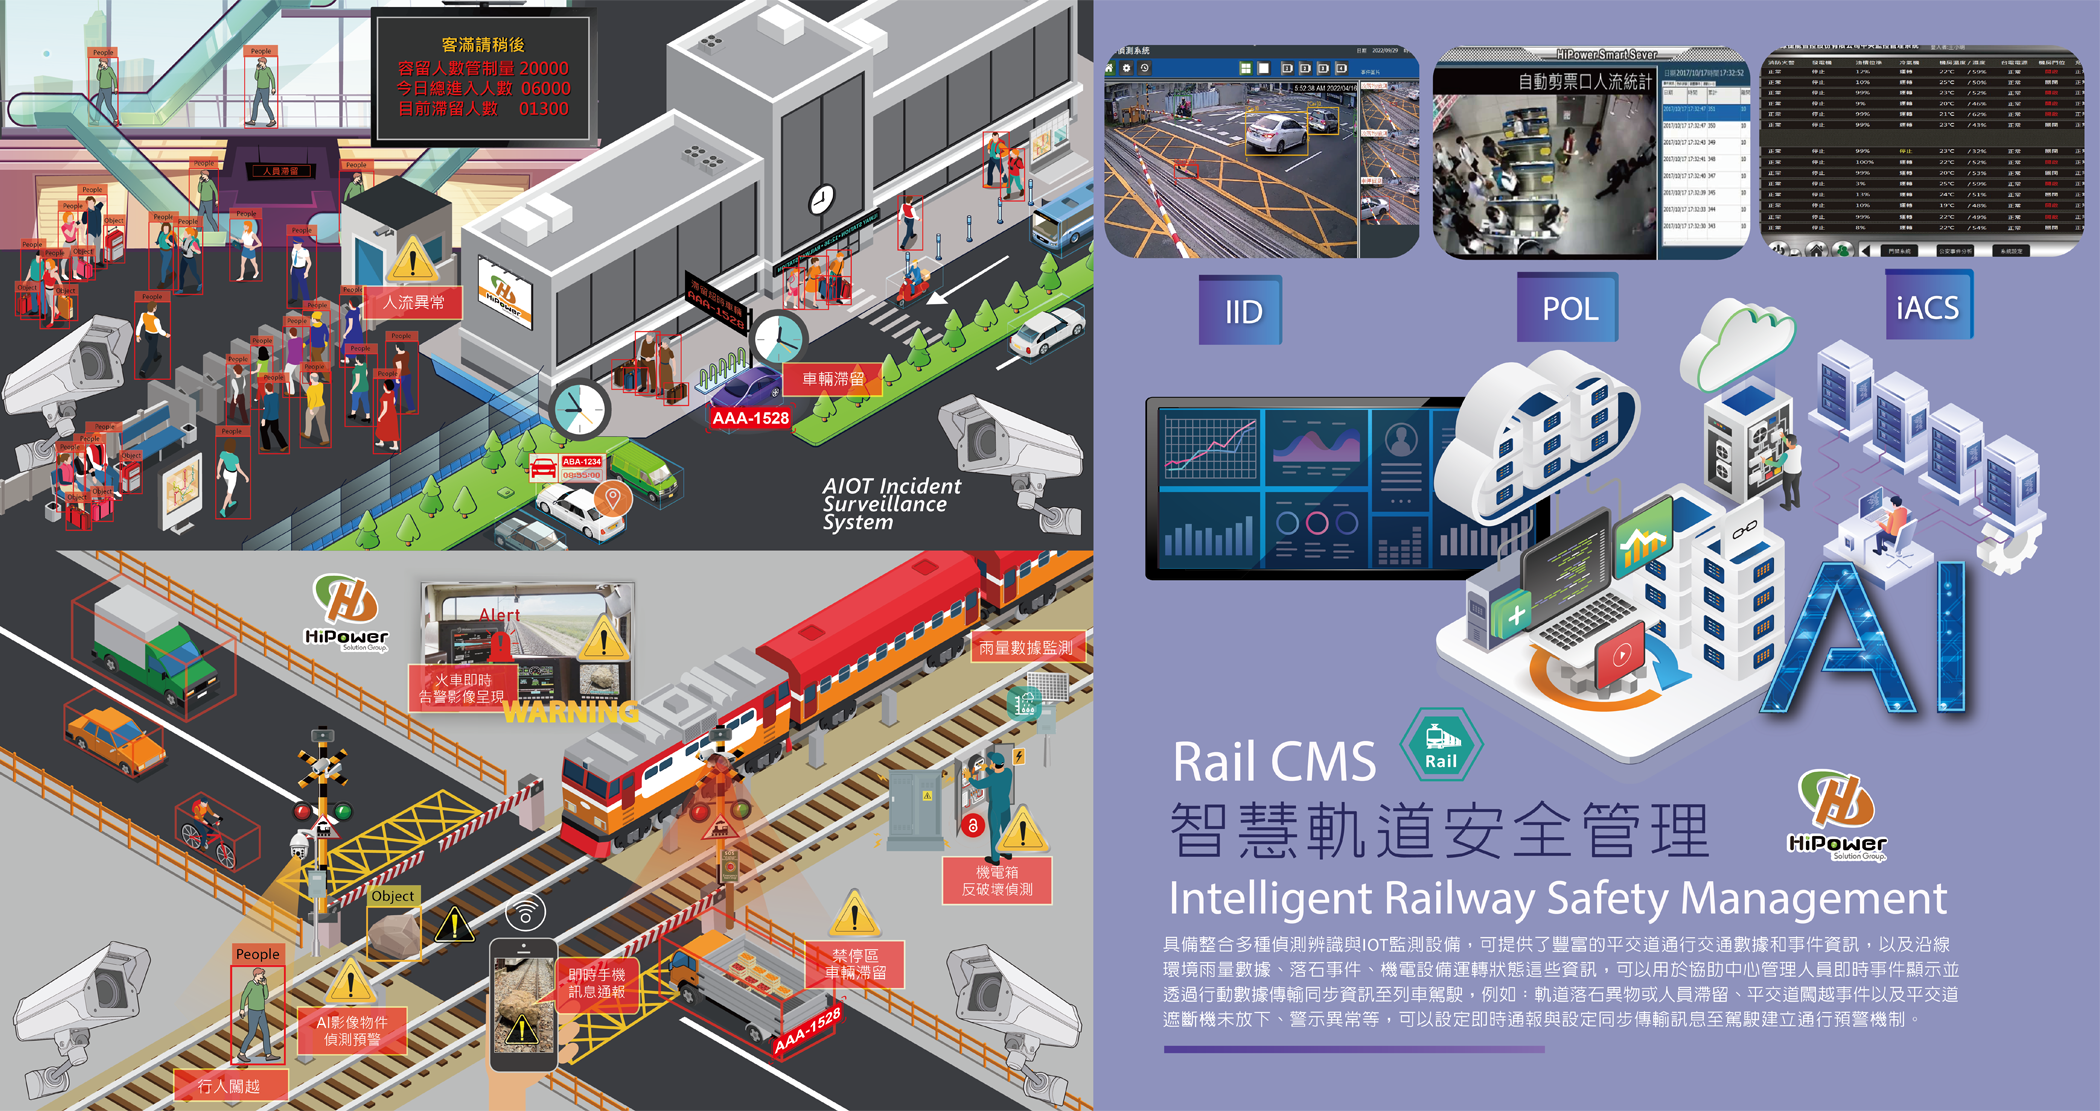 Rail CMS智慧軌道安全管理